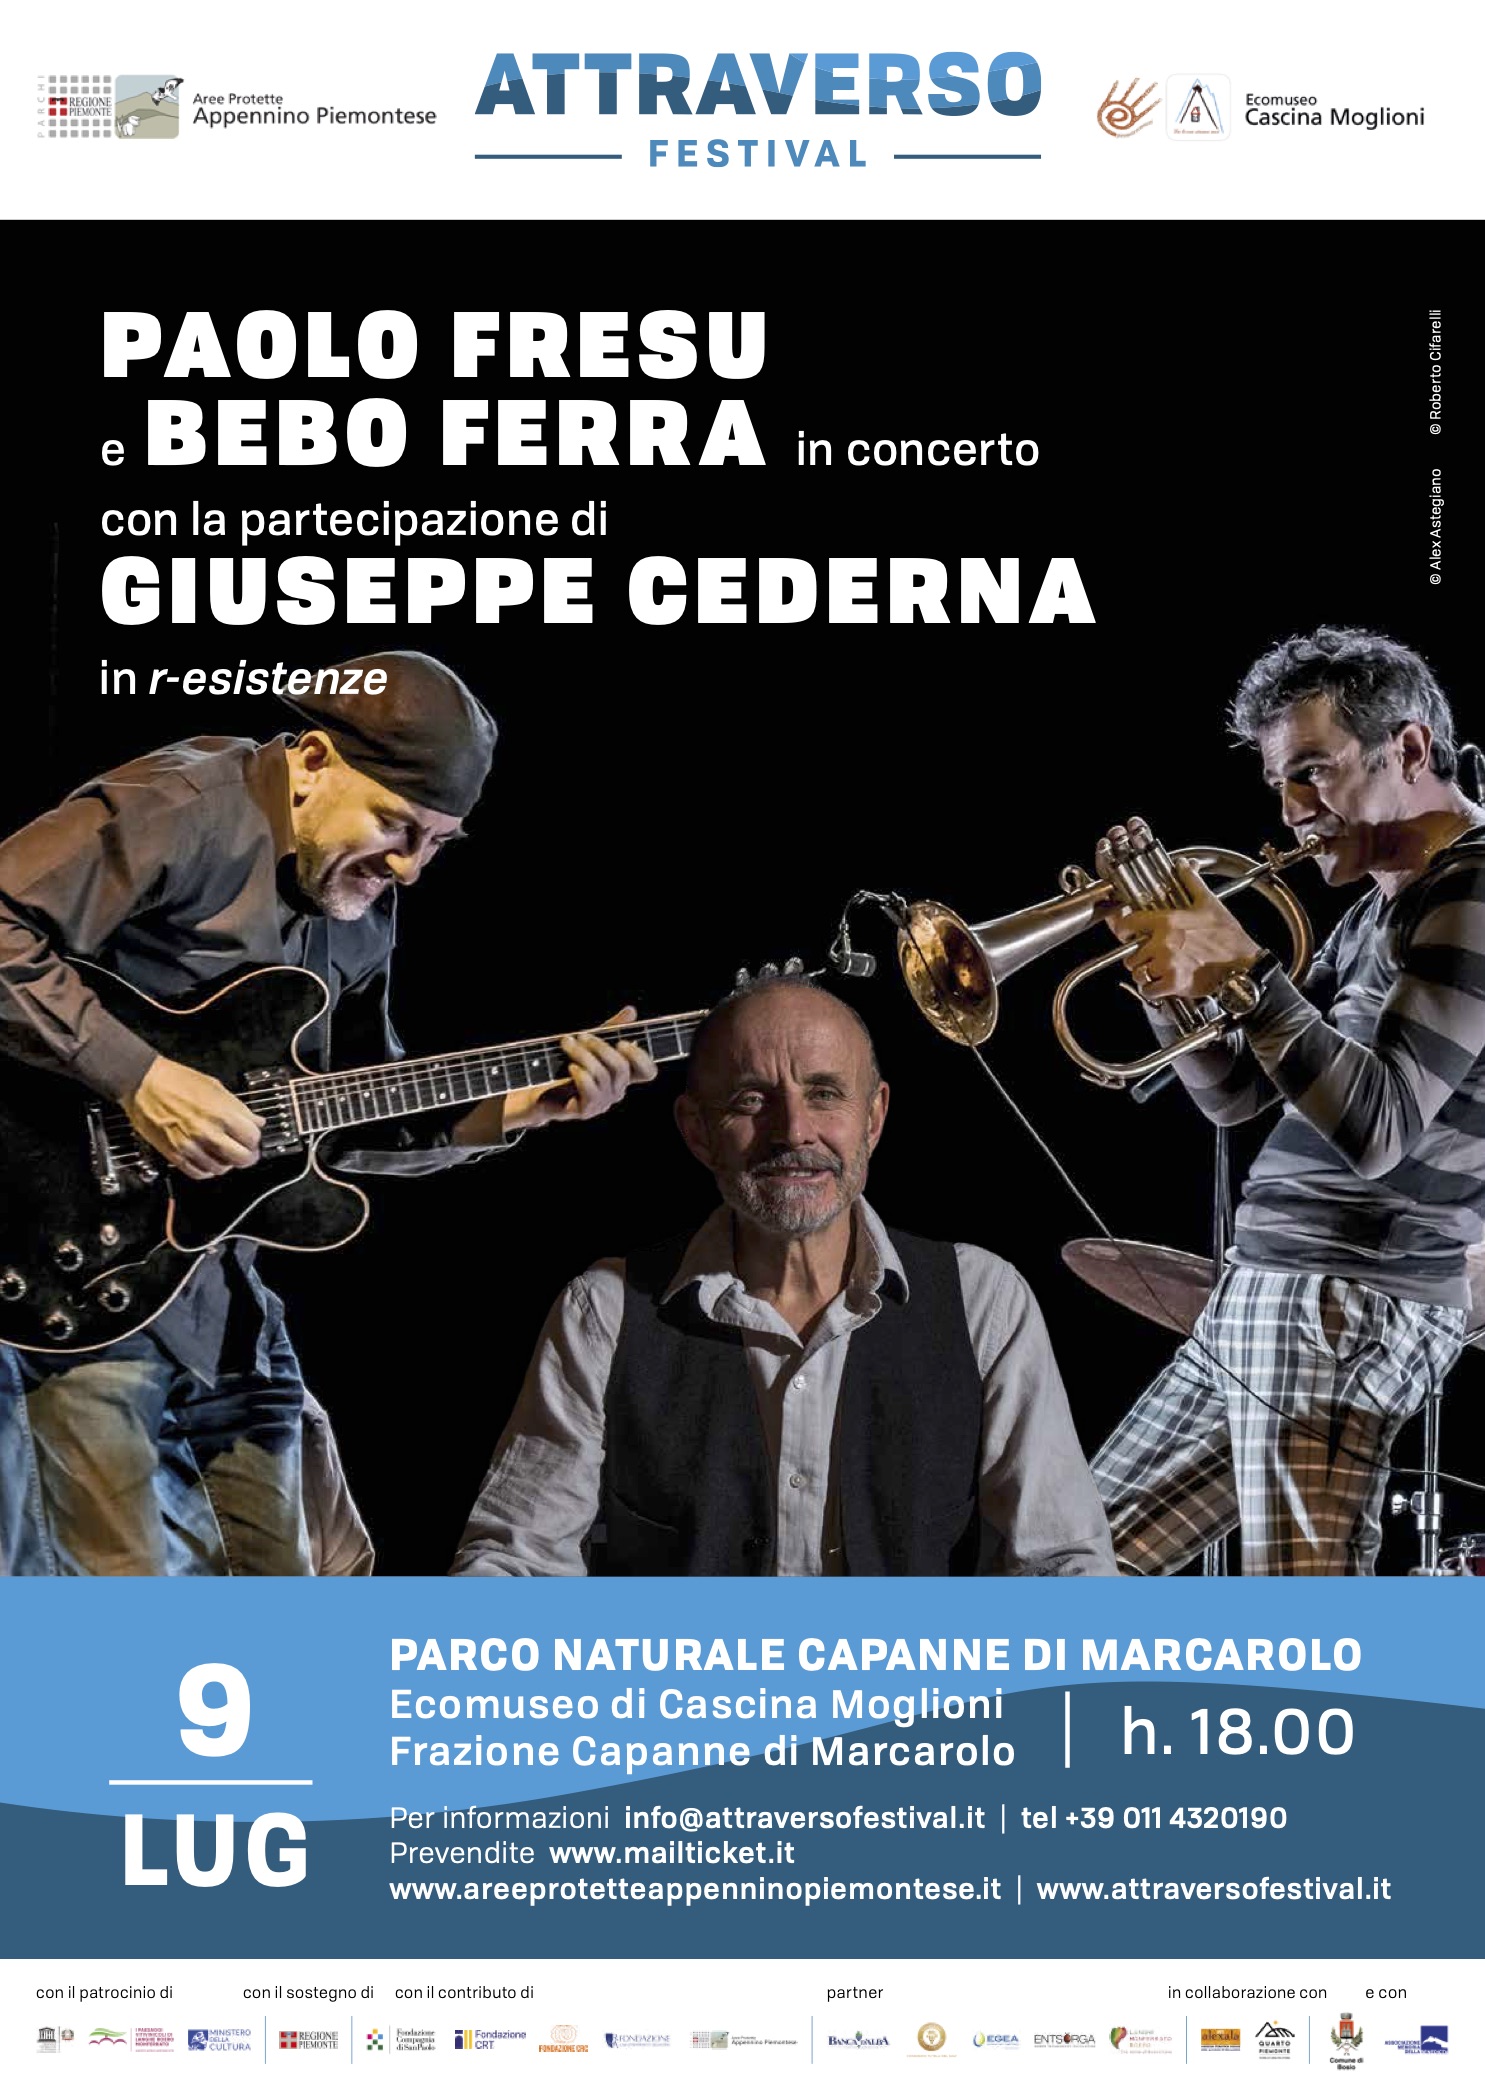 ATTRAVERSO FESTIVAL - Paolo Fresu e Bebo Ferra in concerto con la partecipazione di Giuseppe Cederna in R-esistenze